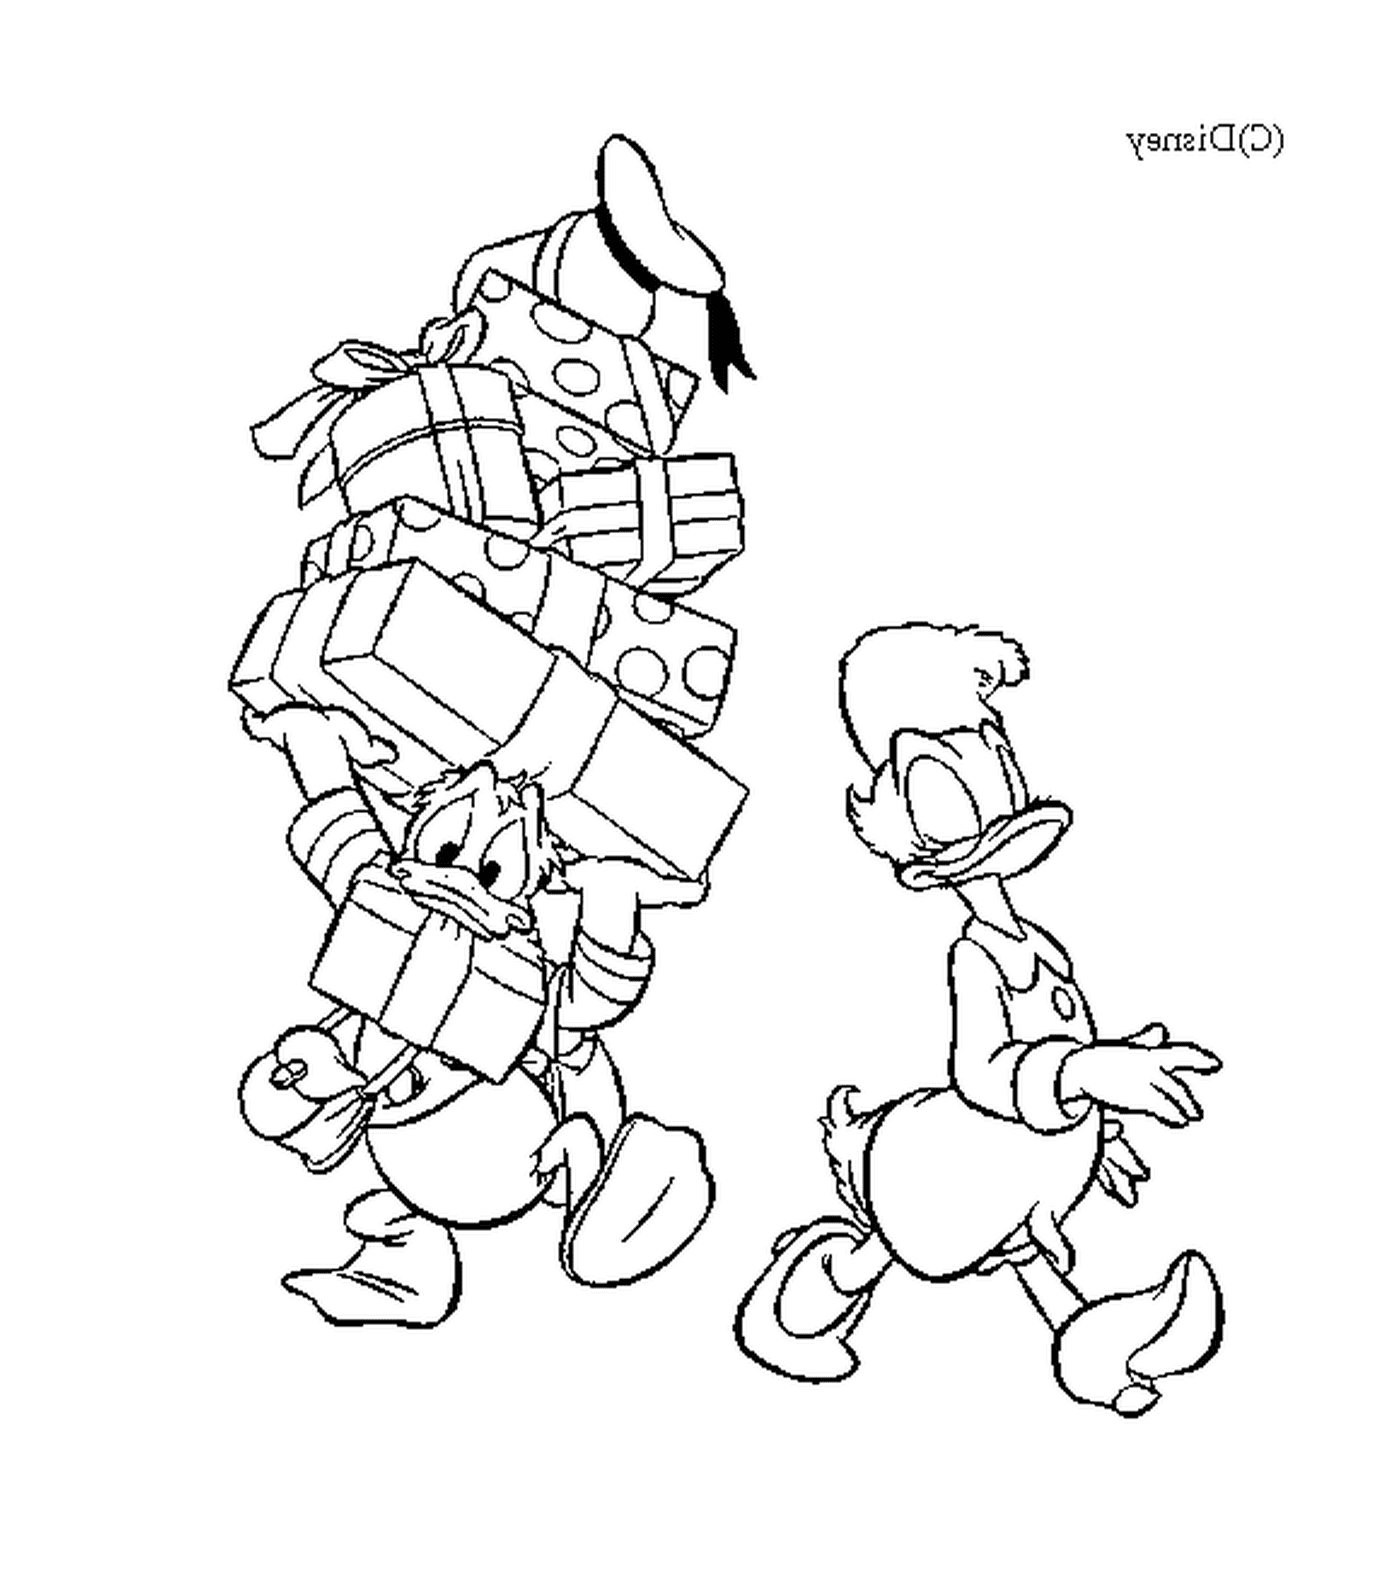  Donald está ayudando a Daisy a llevar los regalos 